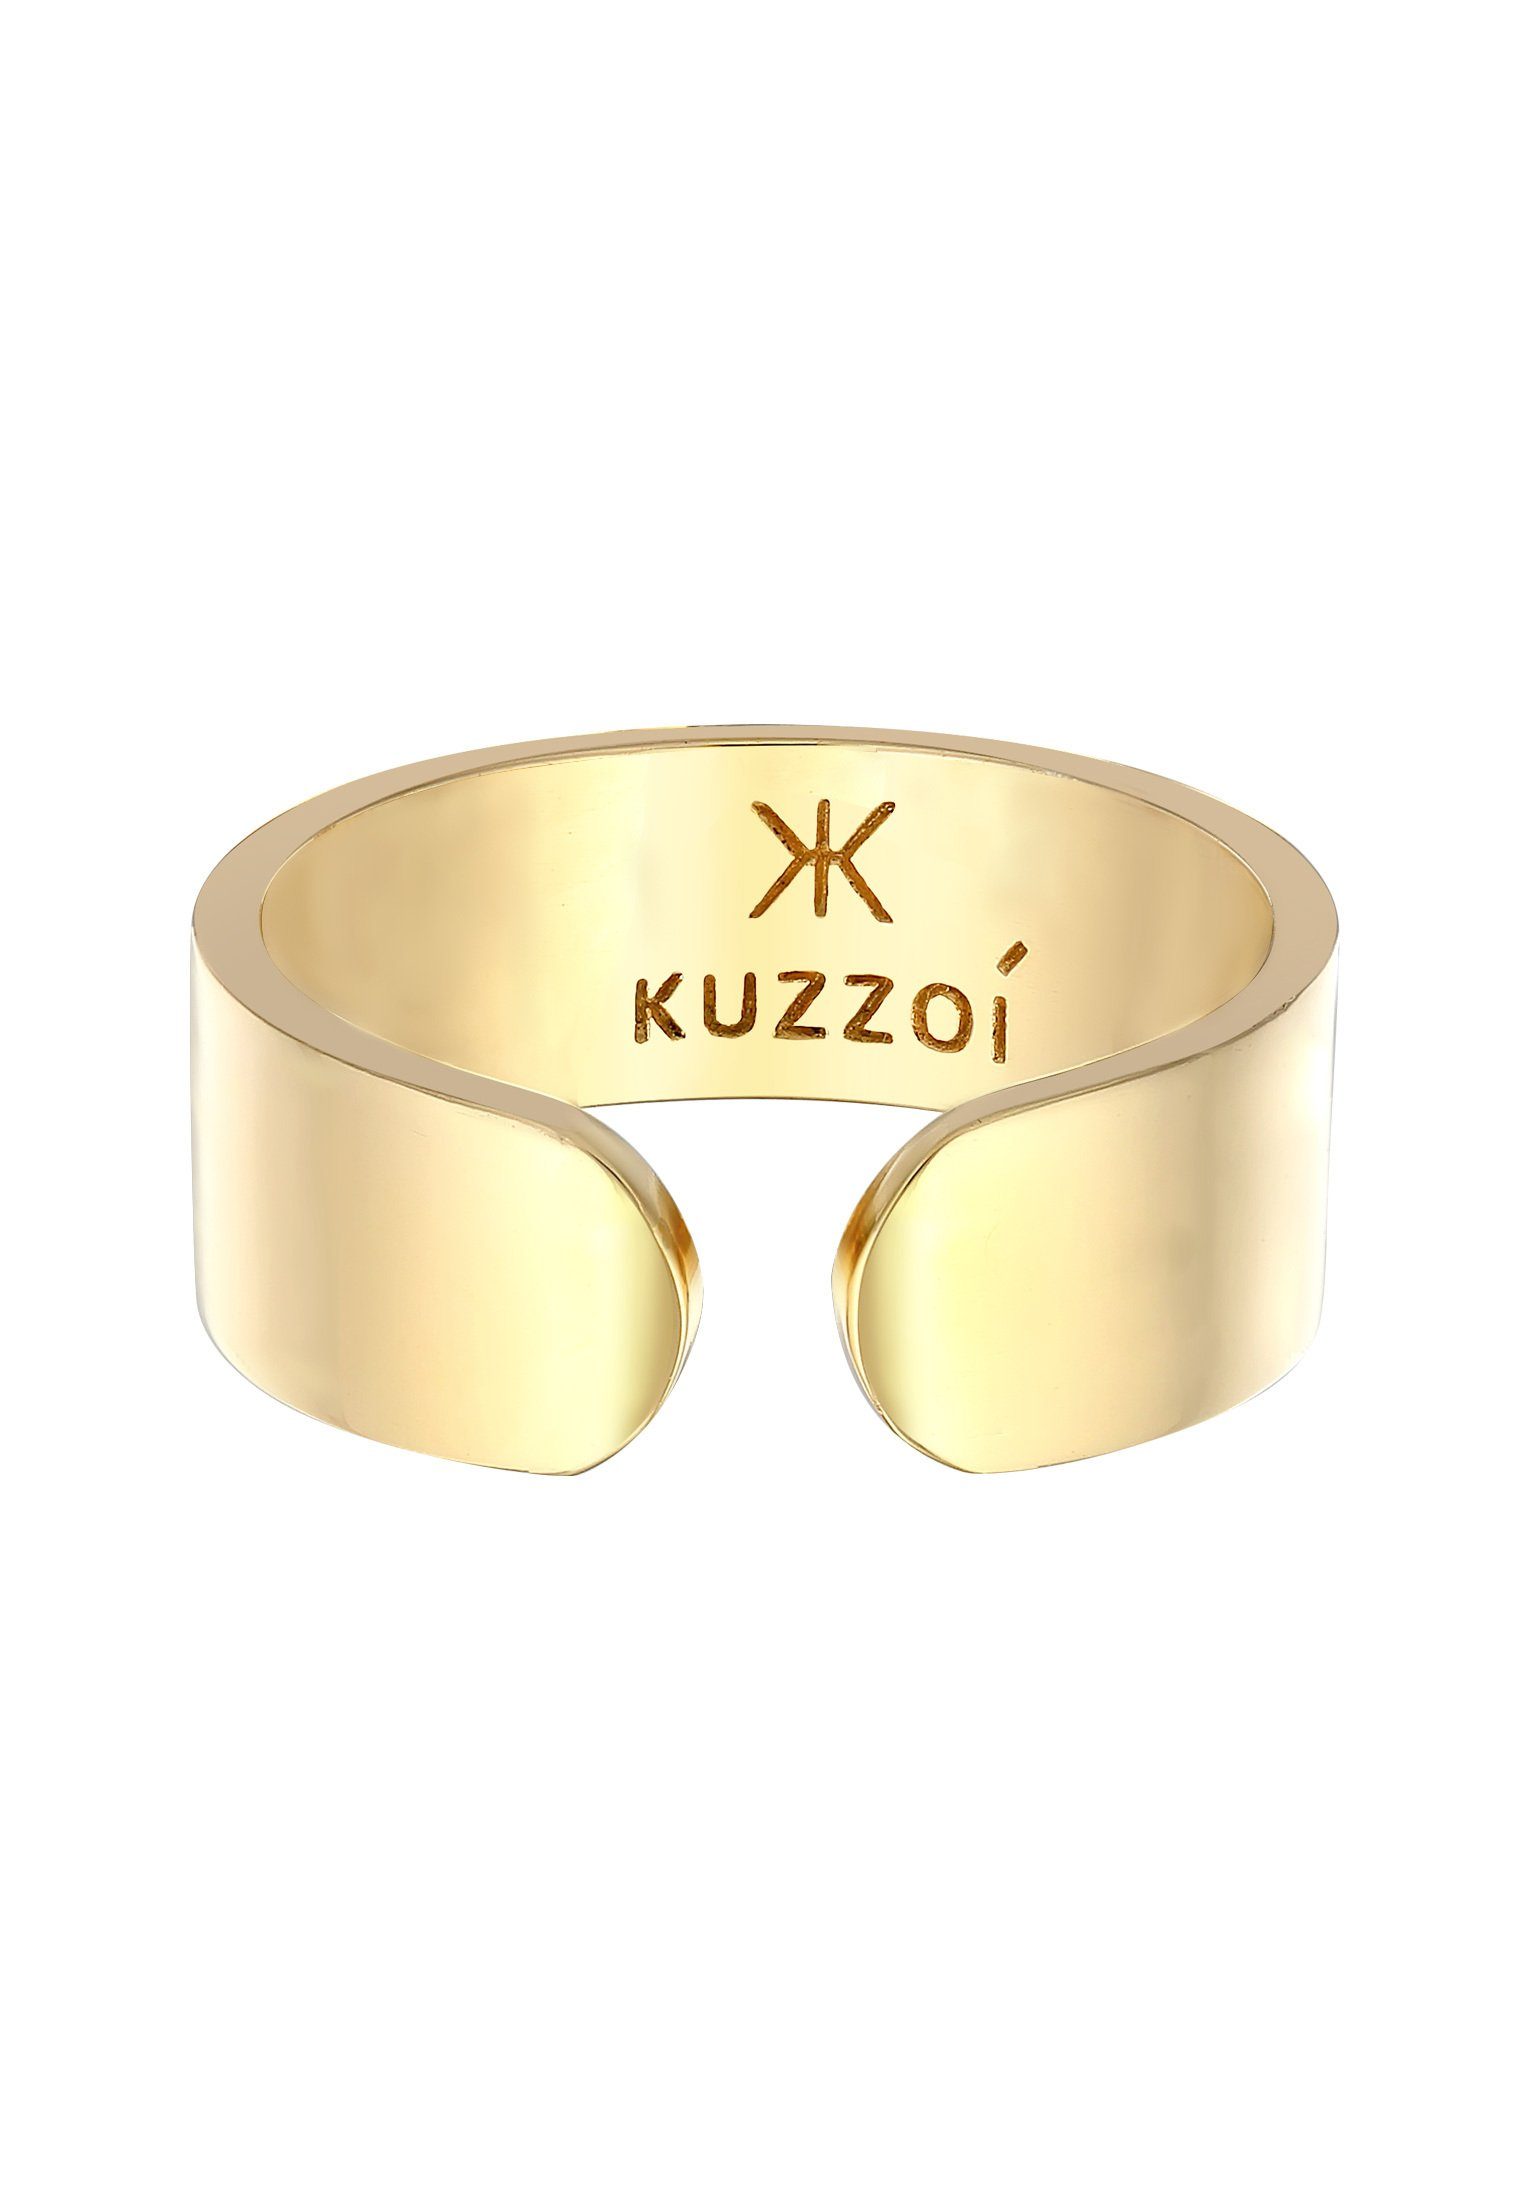 Gold Silber 925 Offen Kuzzoi Silberring Design Bandring Klares